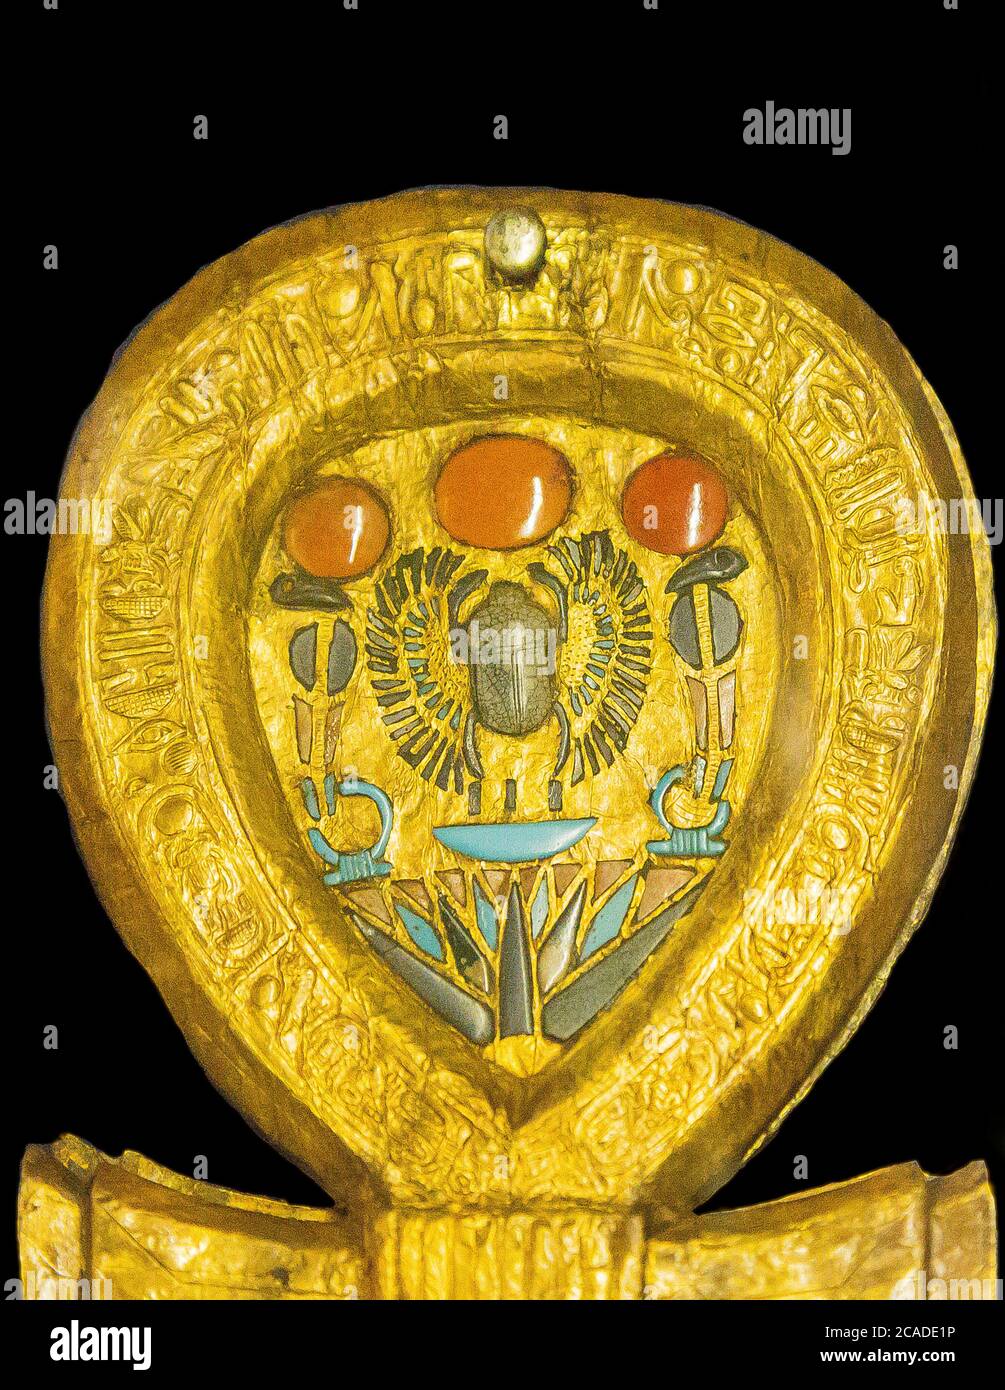 Egypte, le Caire, bijoux Toutankhamon : étui miroir en forme de pancarte Ankh. À l'intérieur de la boucle, un scarabée ailé. Banque D'Images